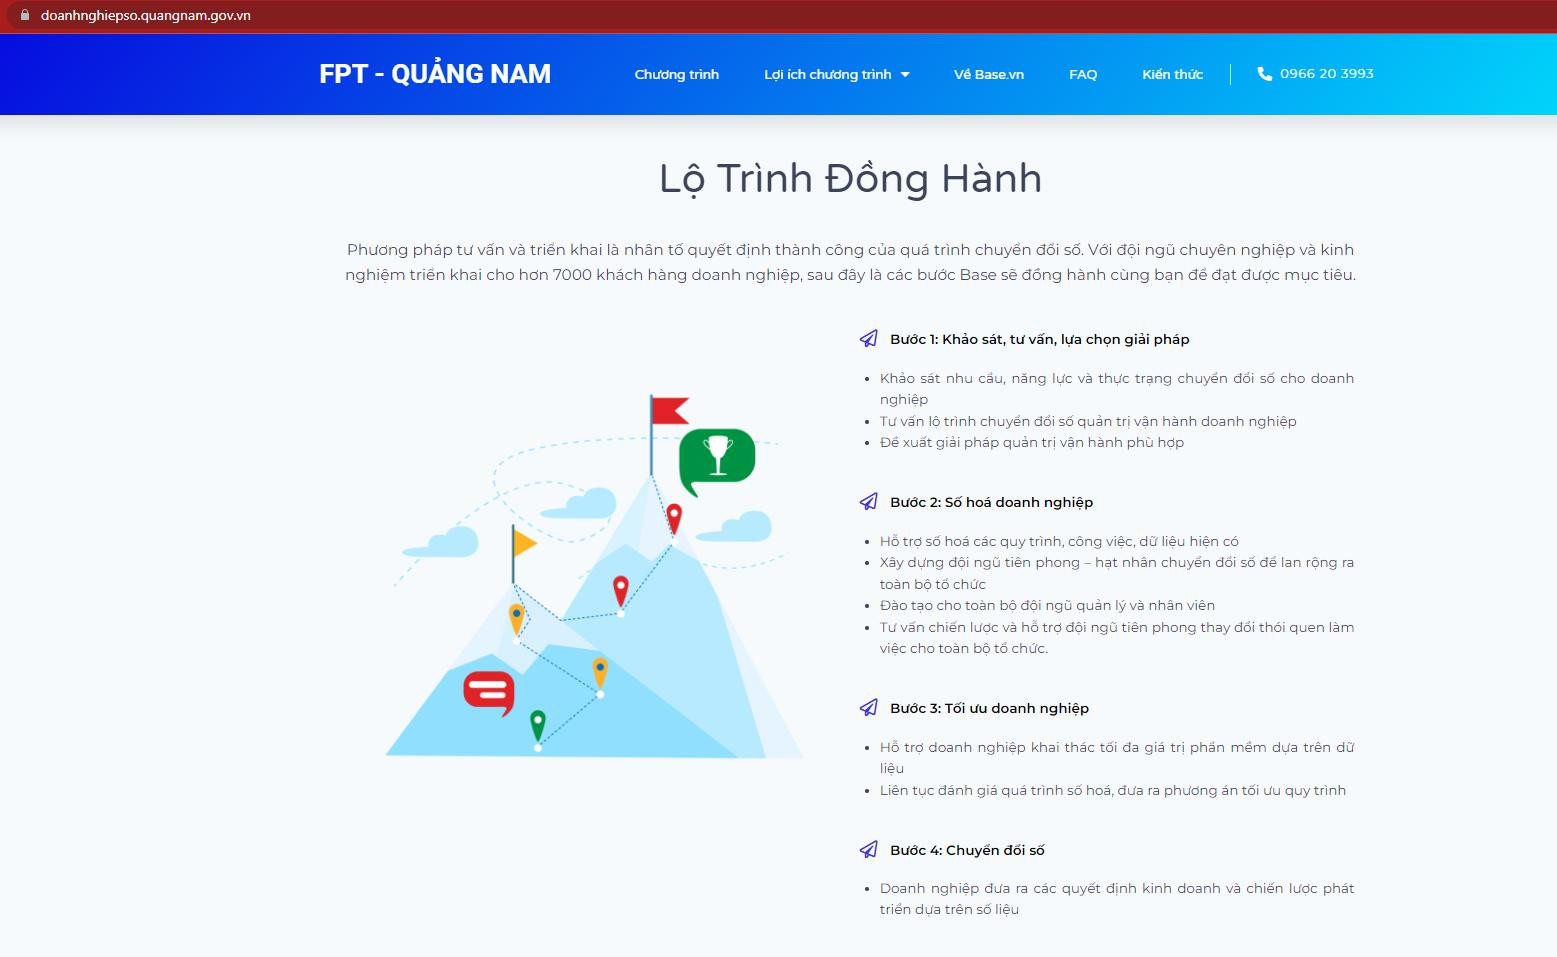 Ra mắt trang thông tin hỗ trợ chuyển đổi số cho doanh nghiệp tỉnh Quảng Nam - Ảnh 1.